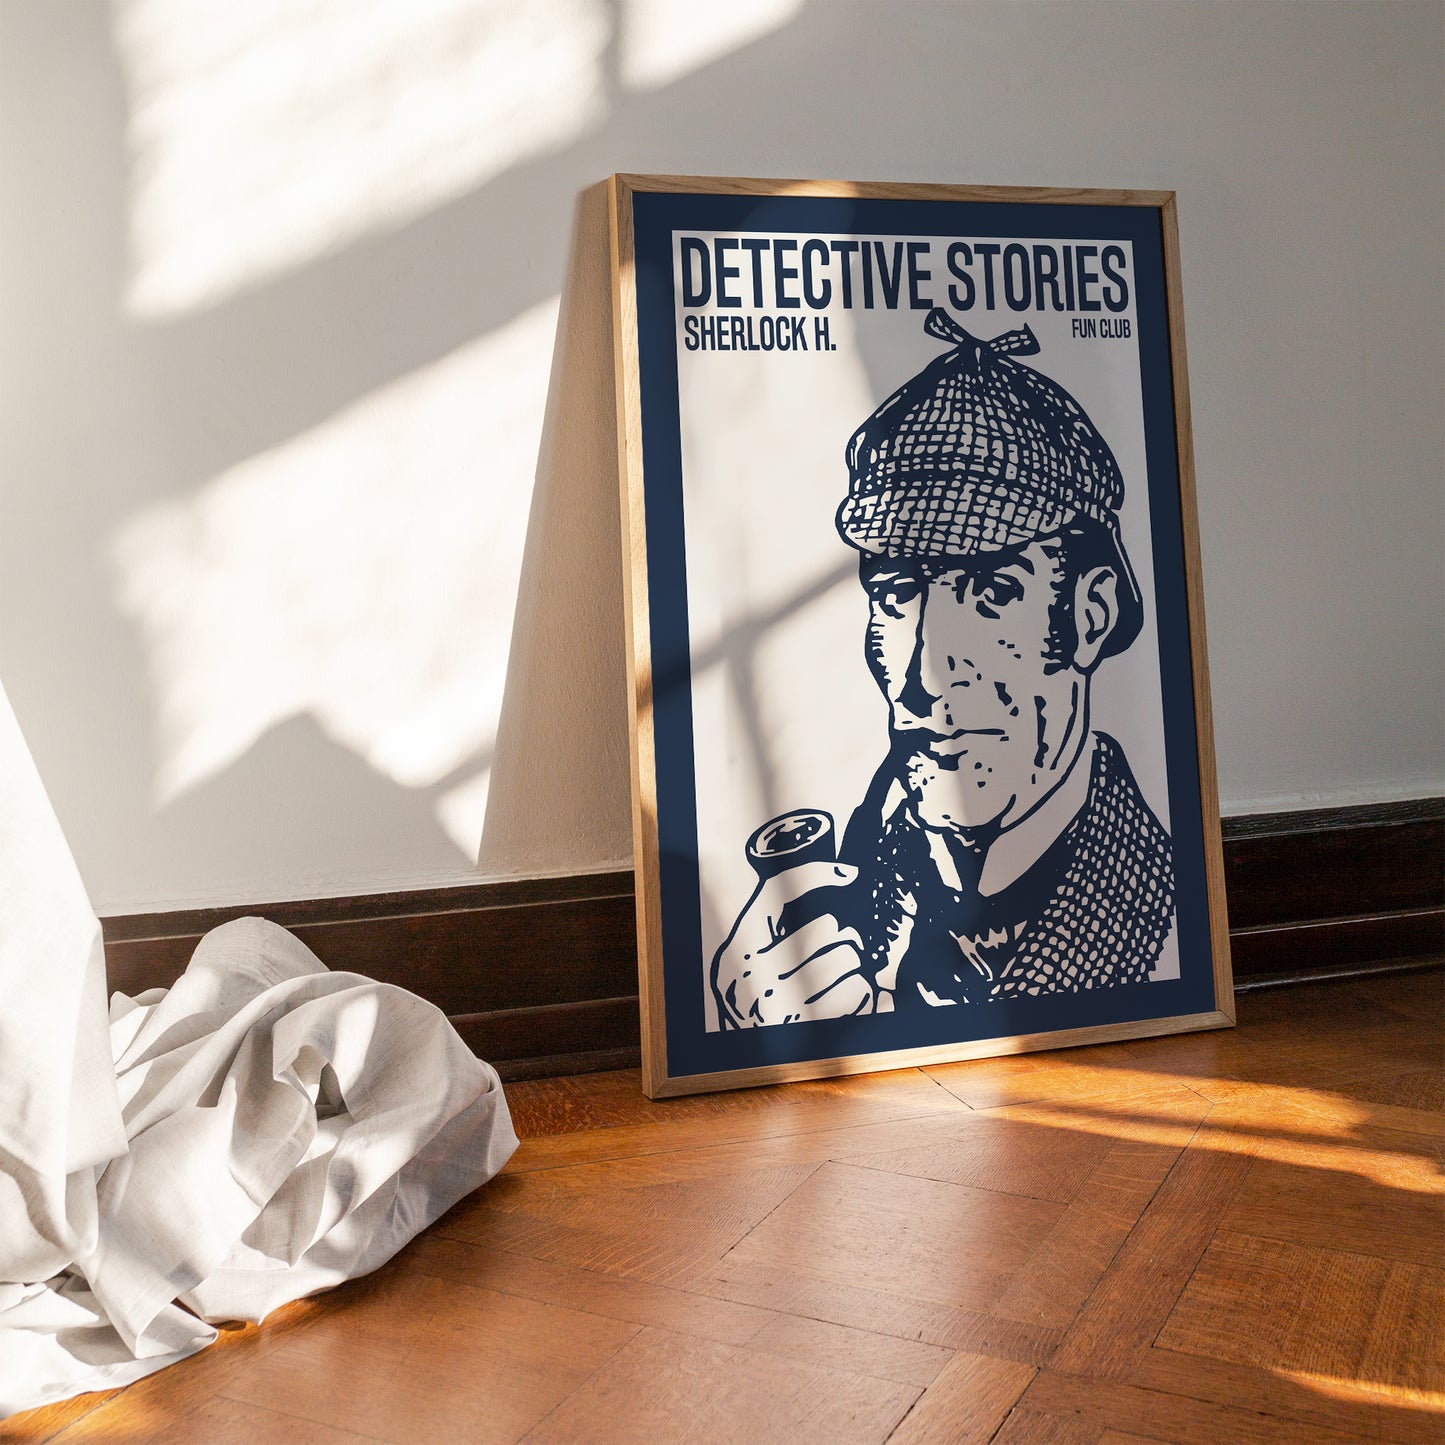 Sherlock Holmes Fan Club Poster